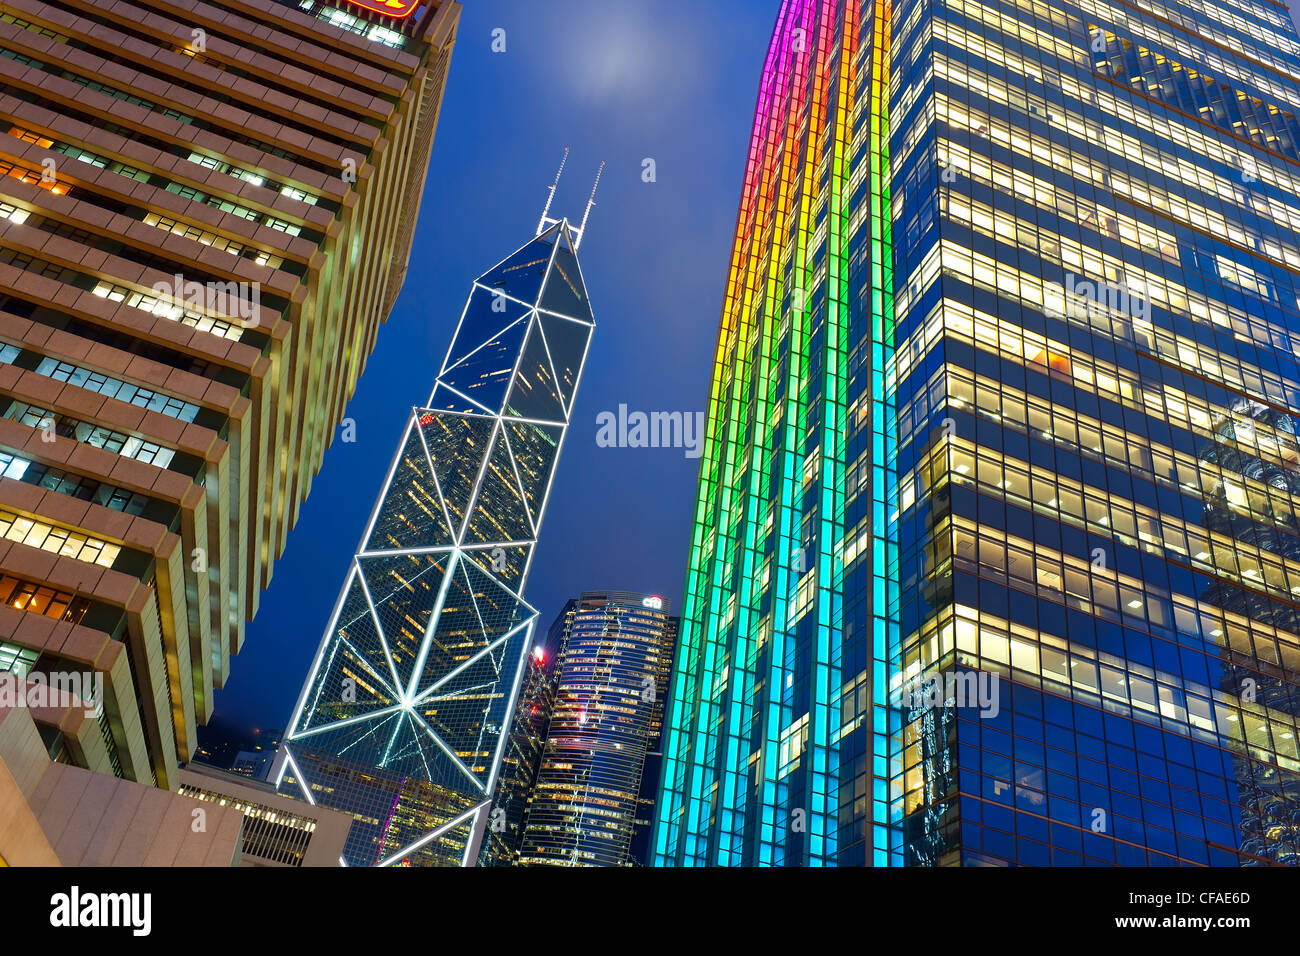 Hong Kong skyline at Dusk, Centre des affaires et du quartier financier, Banque de Chine, l'île de Hong Kong, Chine Banque D'Images